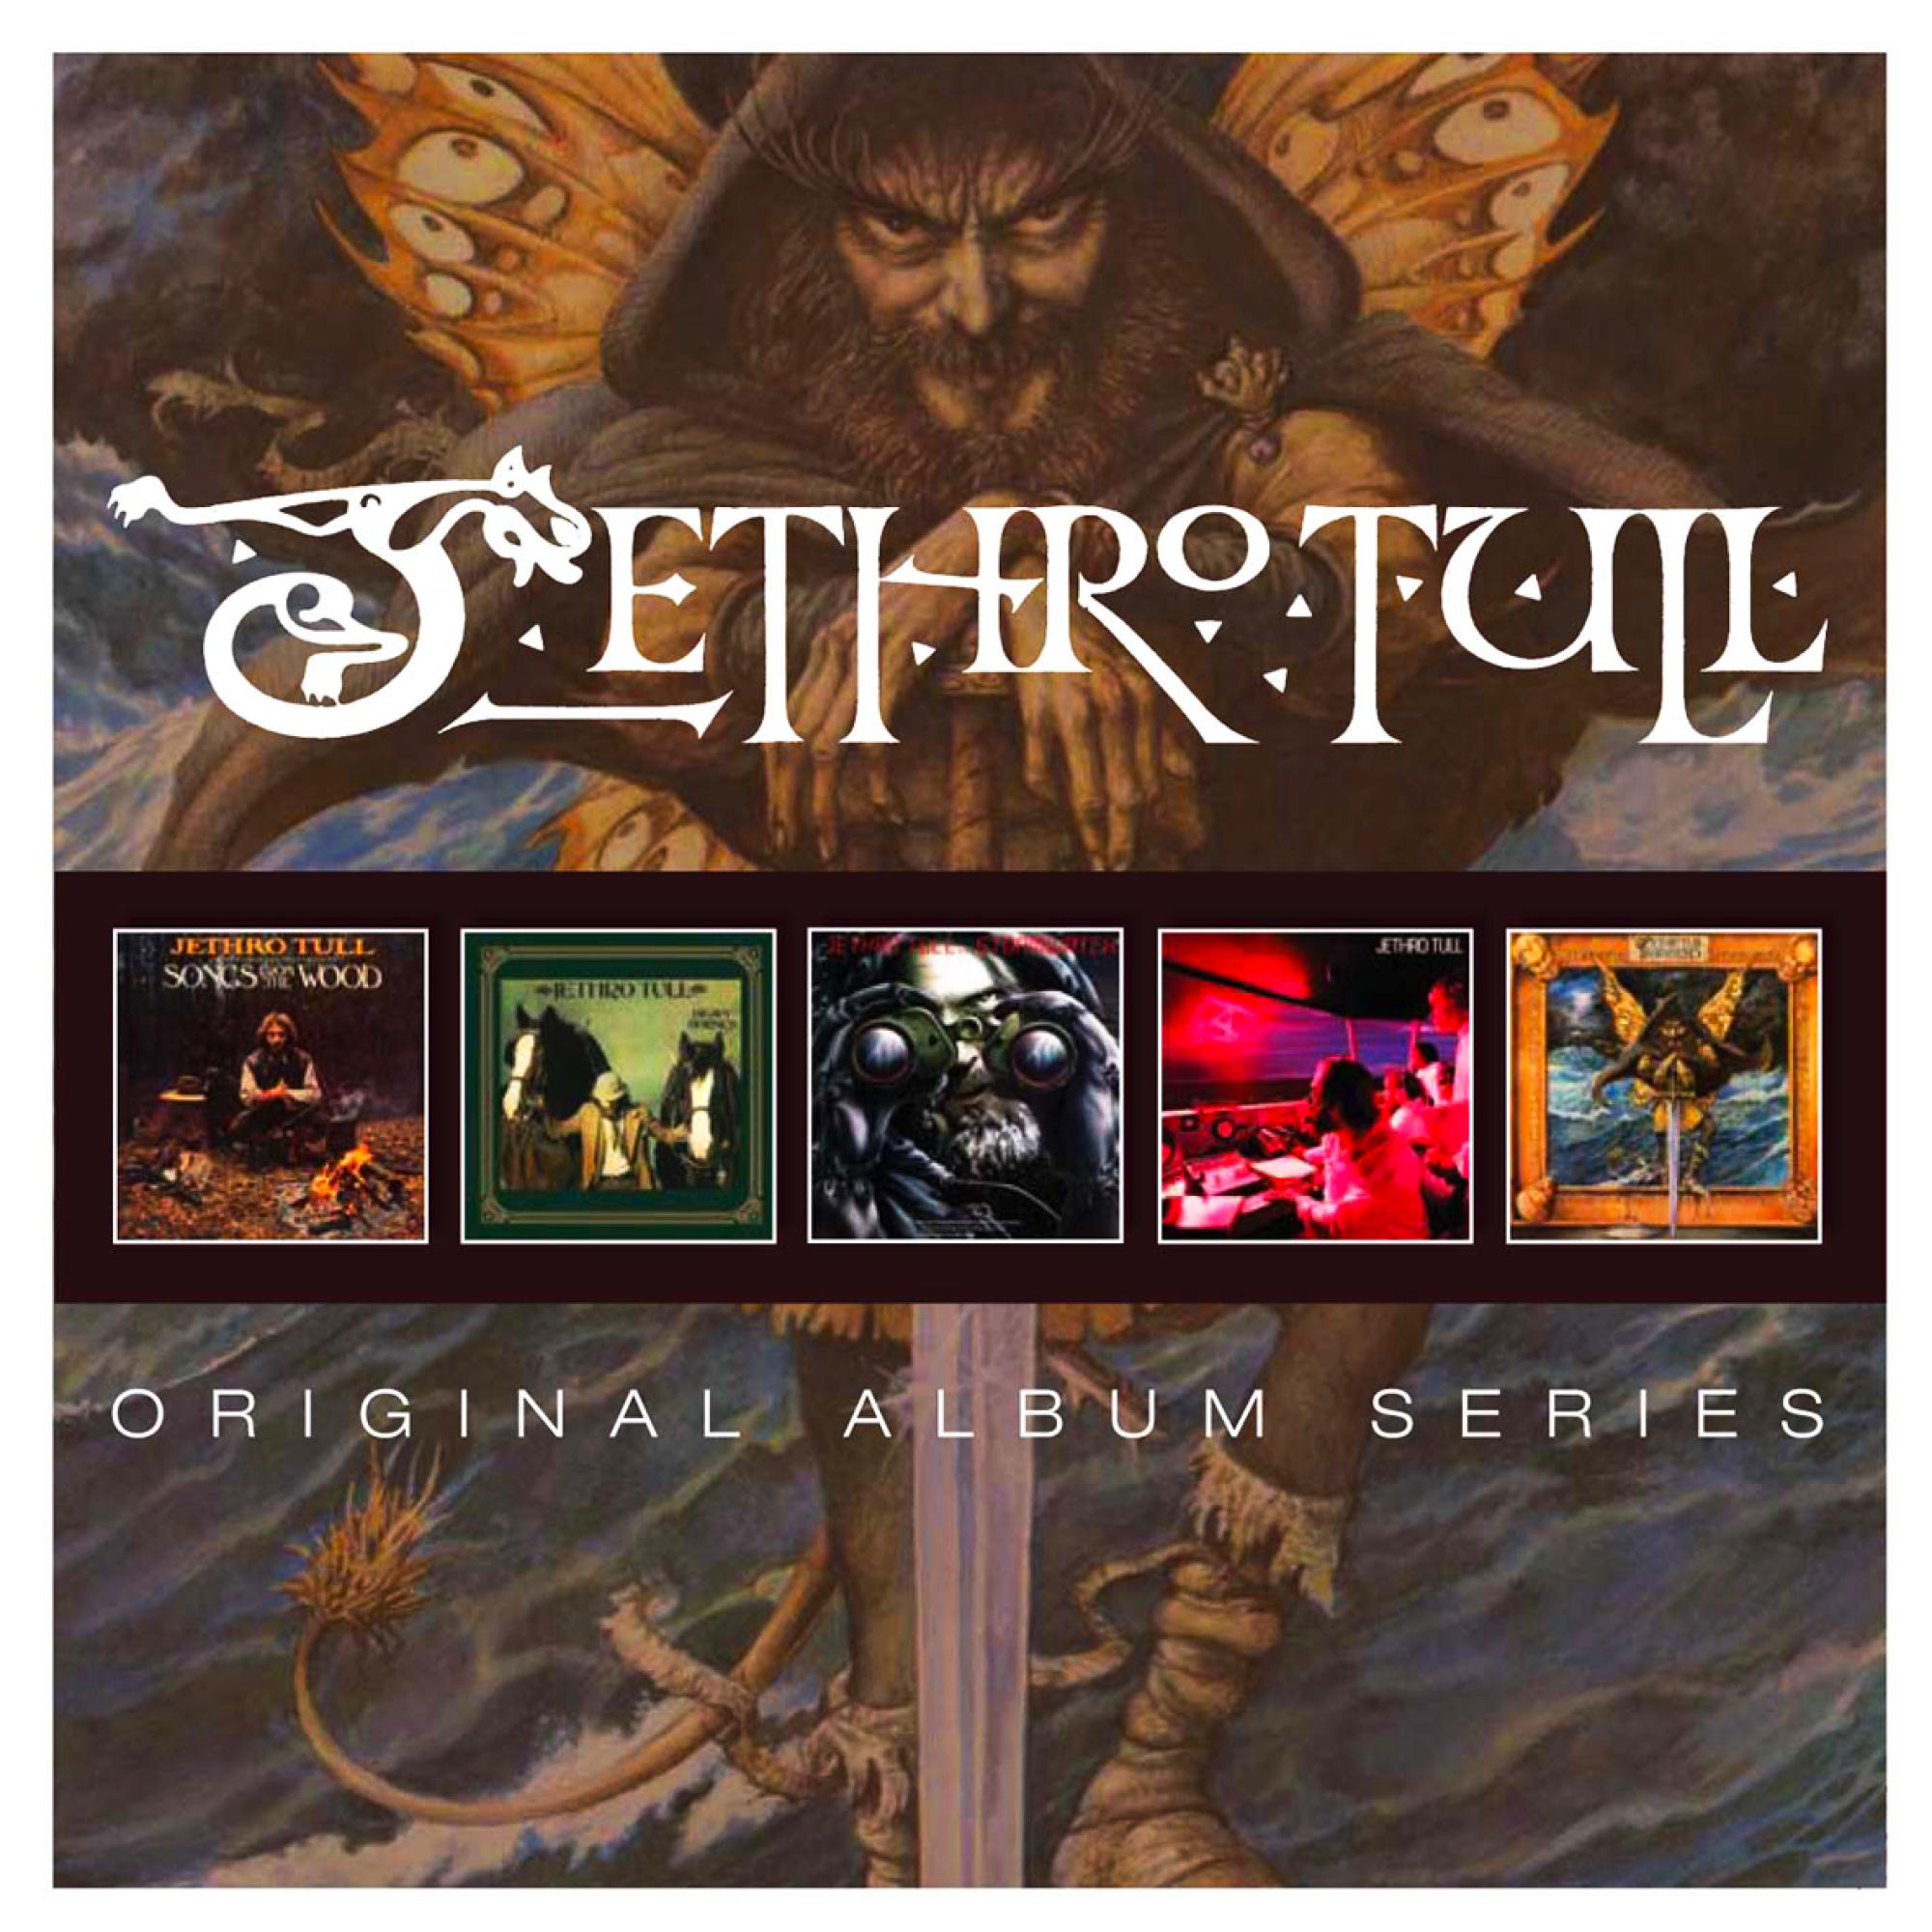 (5 Cd Original Box) - Series - Jethro Tull Album (CD)